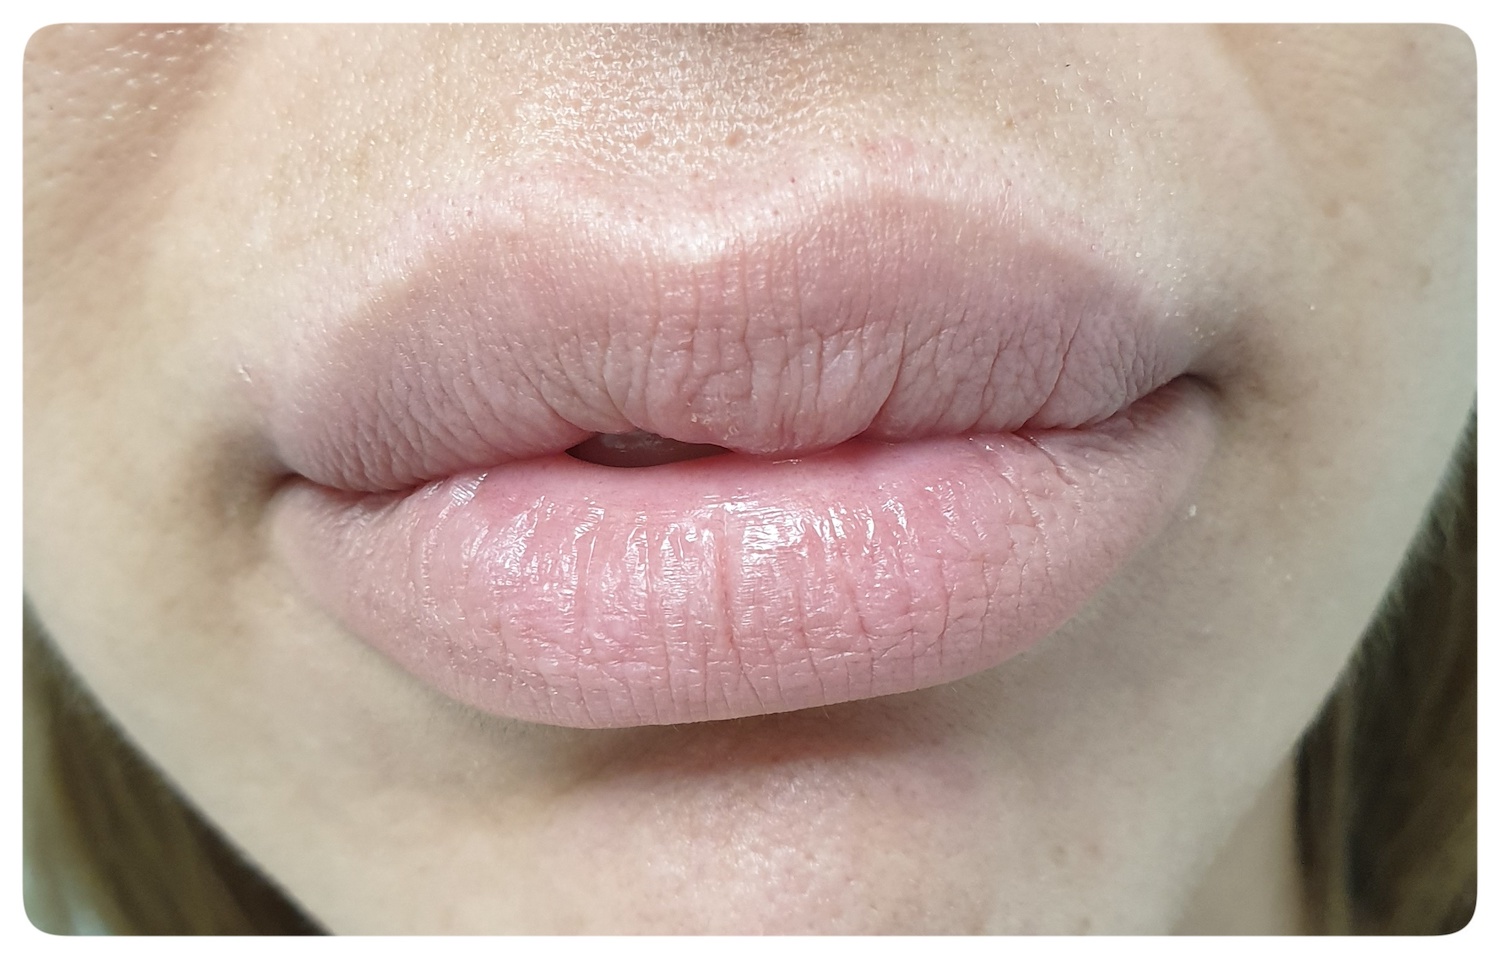 Pacijent br.1: Aplikovanje hijaluronskih filera u usne- Pre